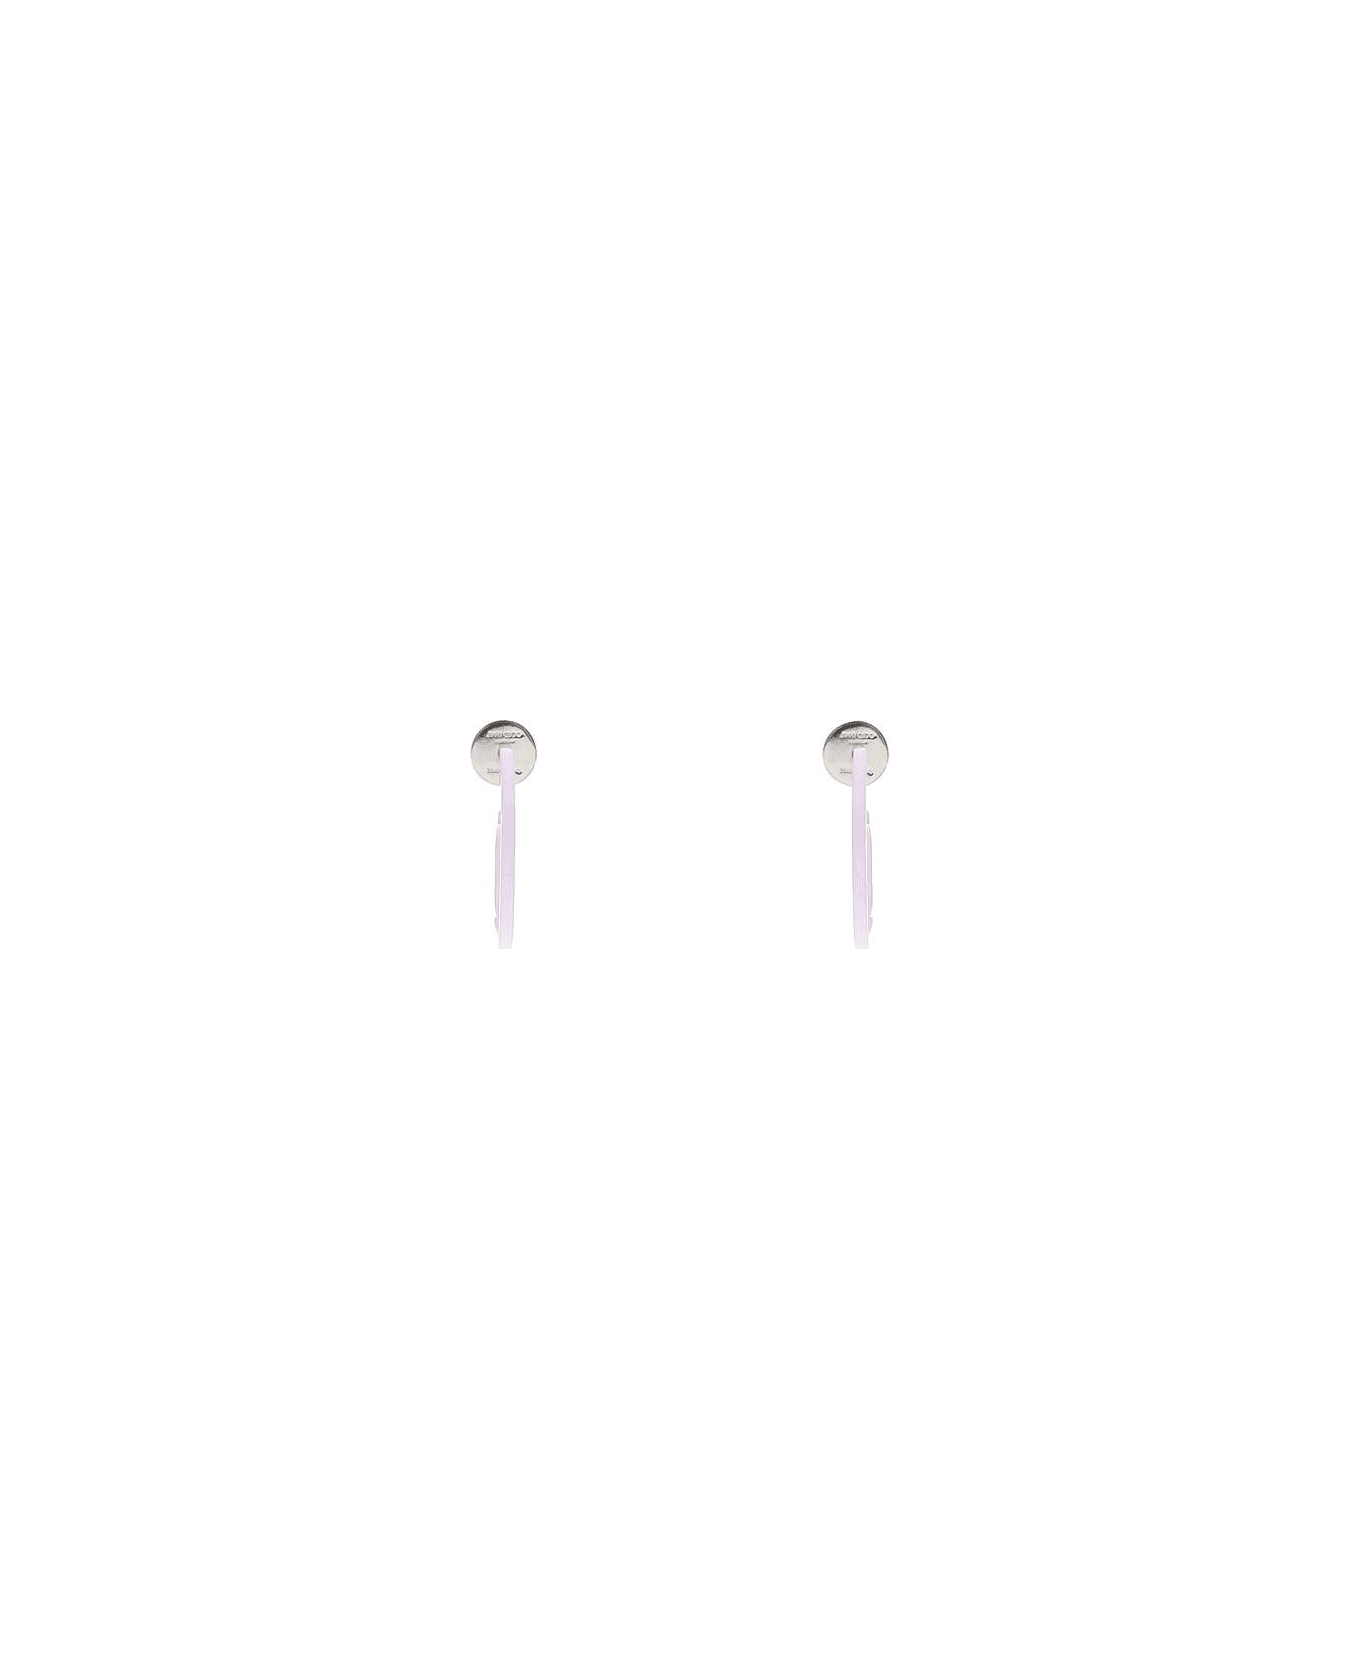 Jimmy Choo 'jc Monogram Hoops' Earrings - WISTERIA (Purple) イヤリング